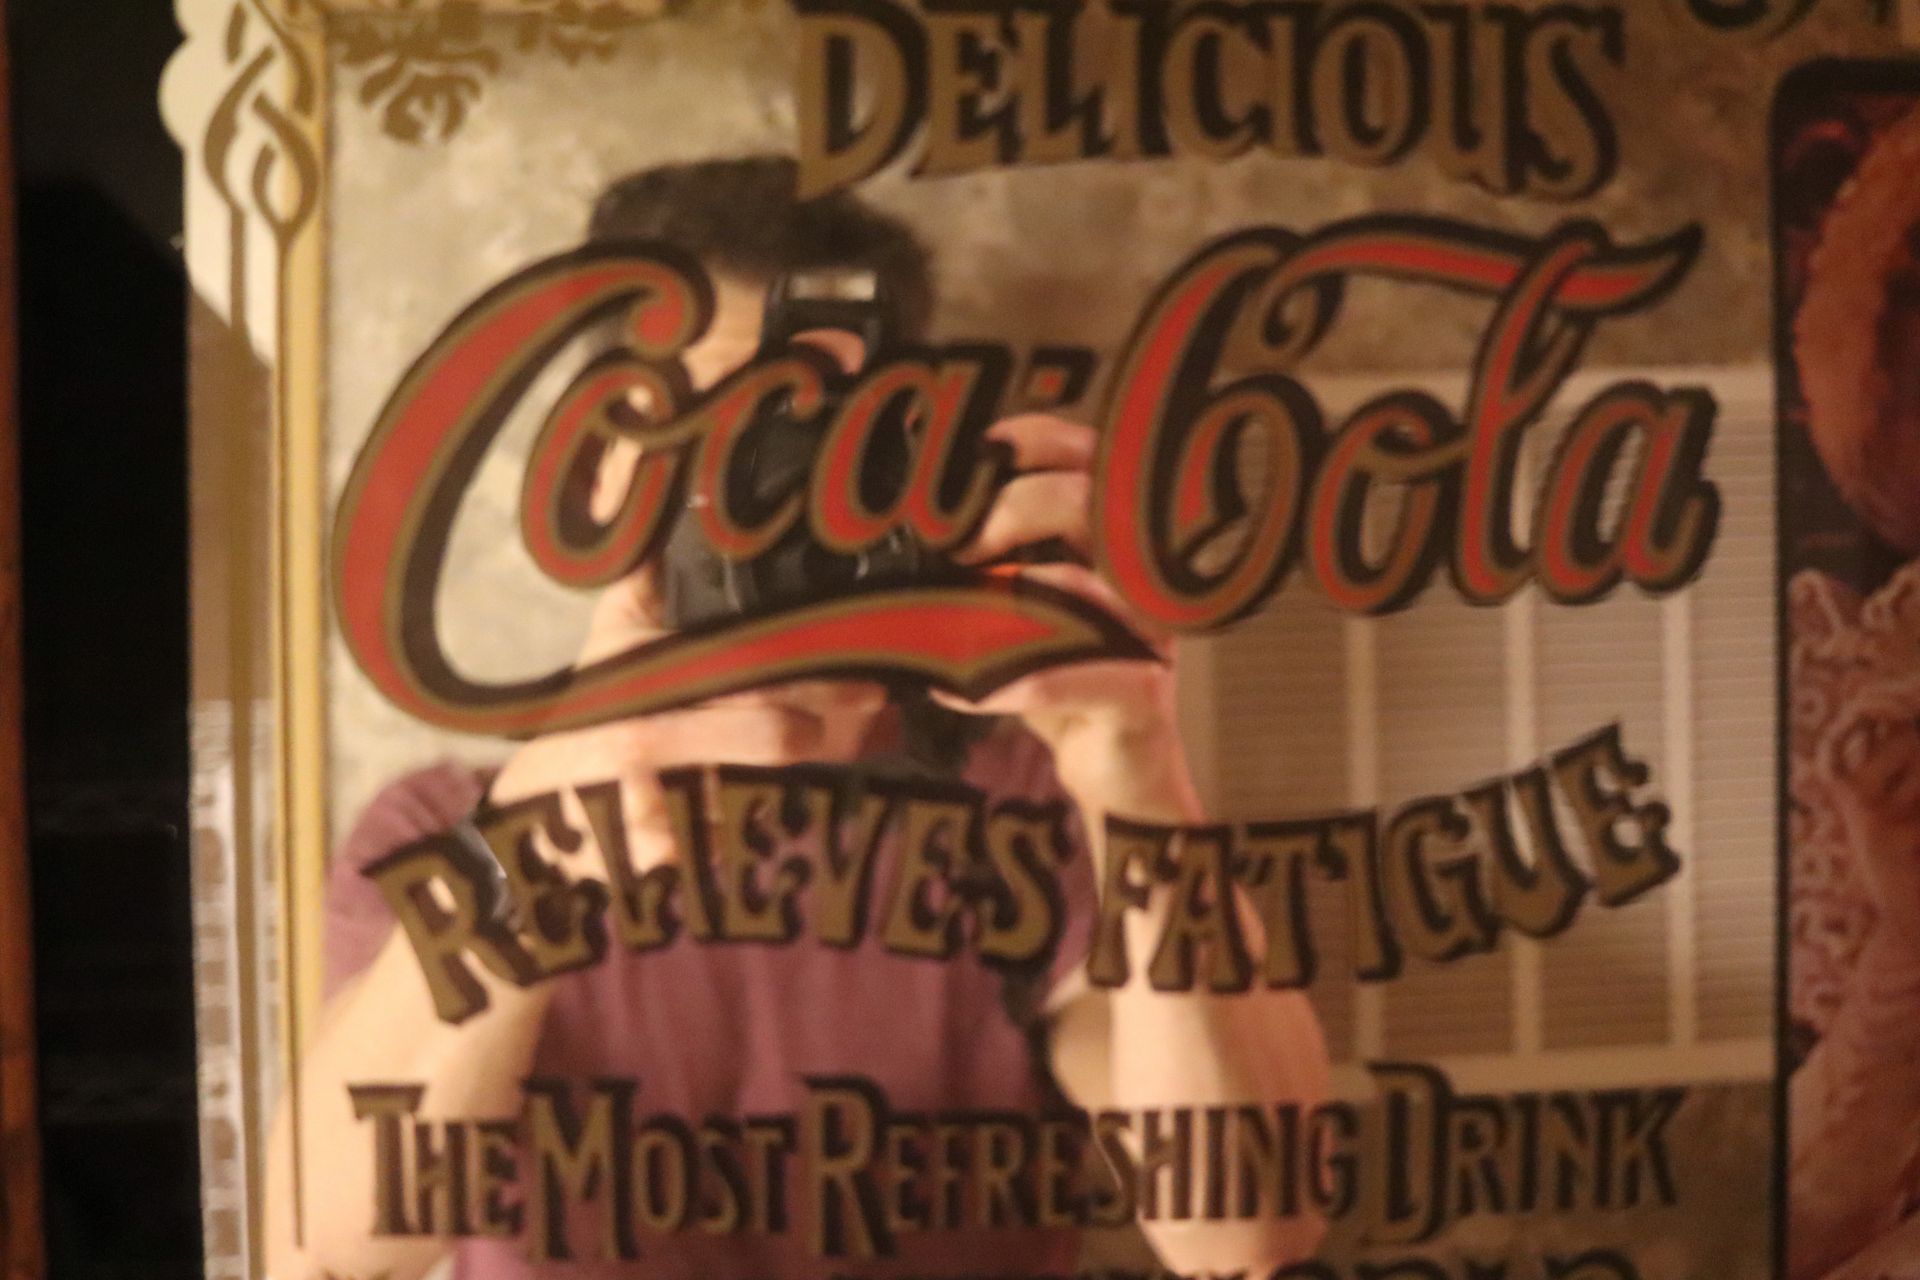 Coca-Cola mirror Sign - Image 3 of 3